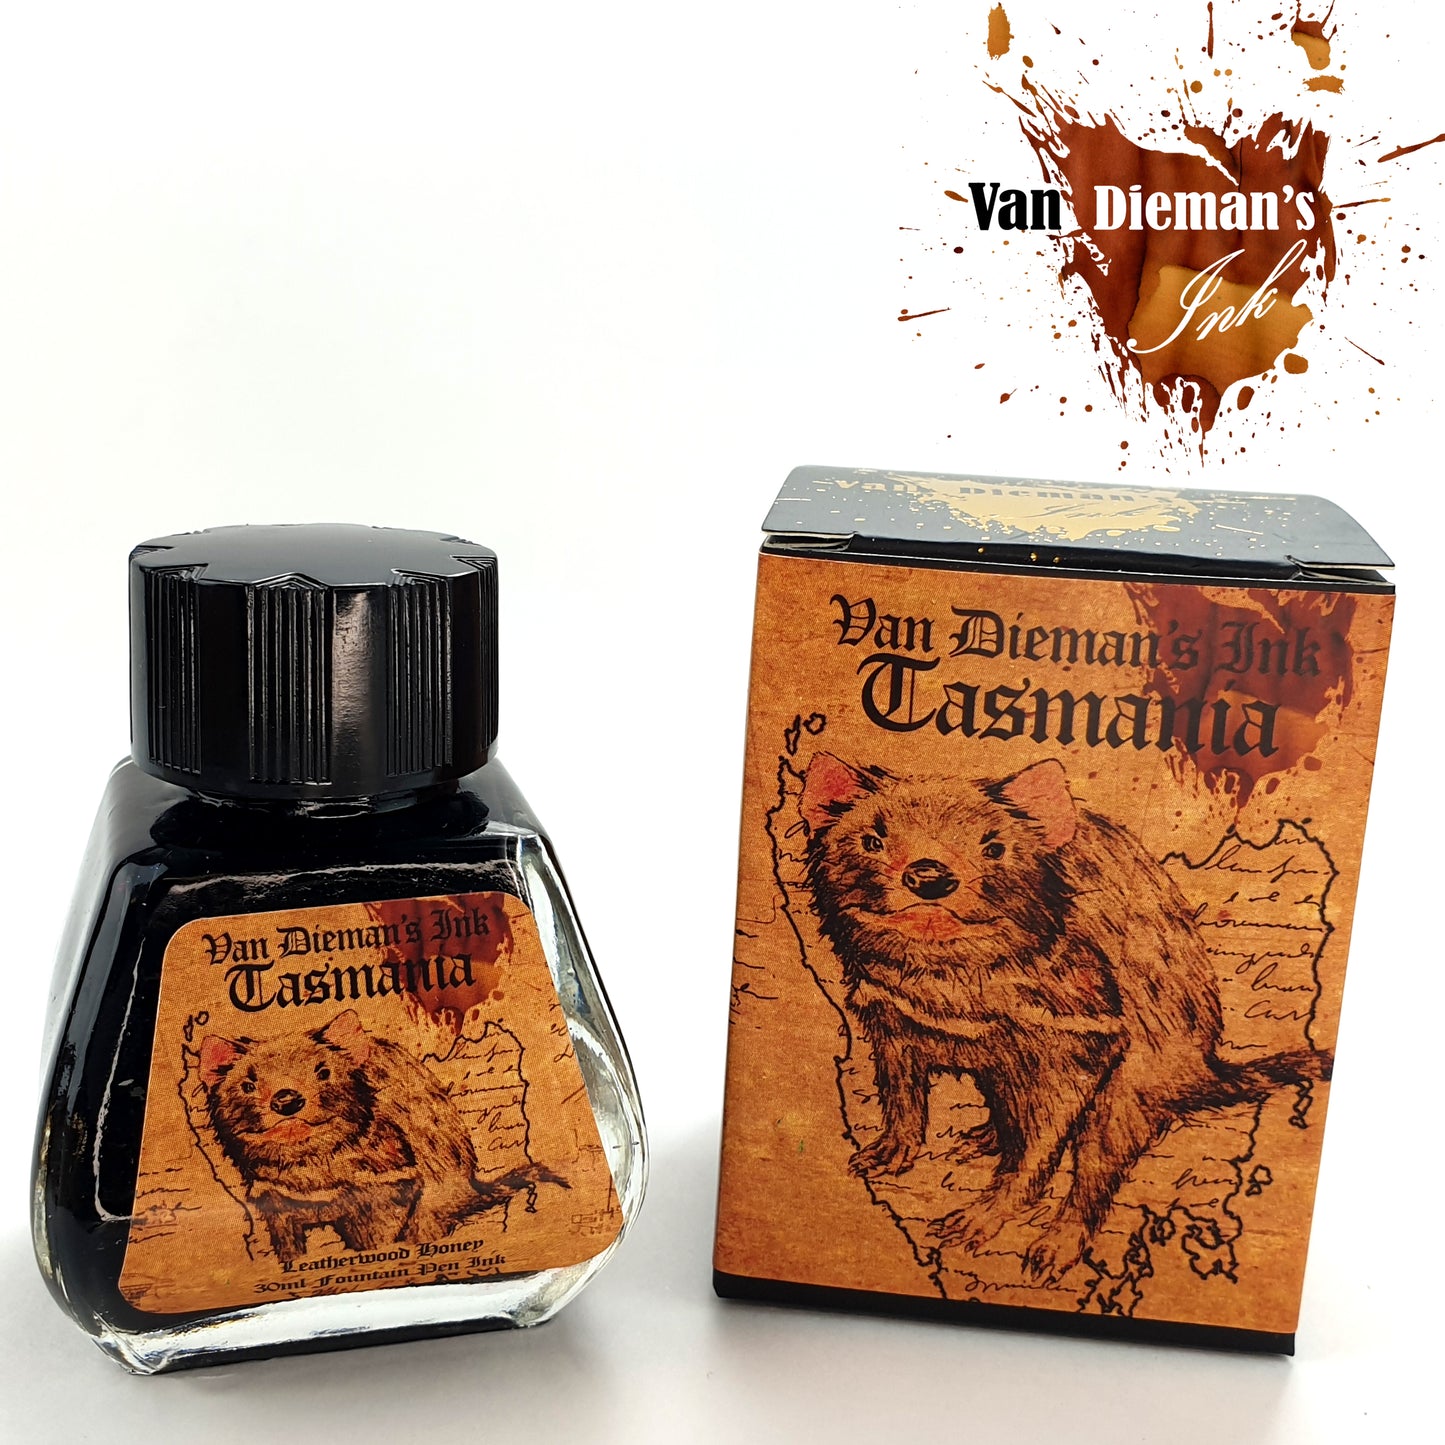 Van Dieman's Tasmania - Leatherwood Honey - Fountain Pen Ink